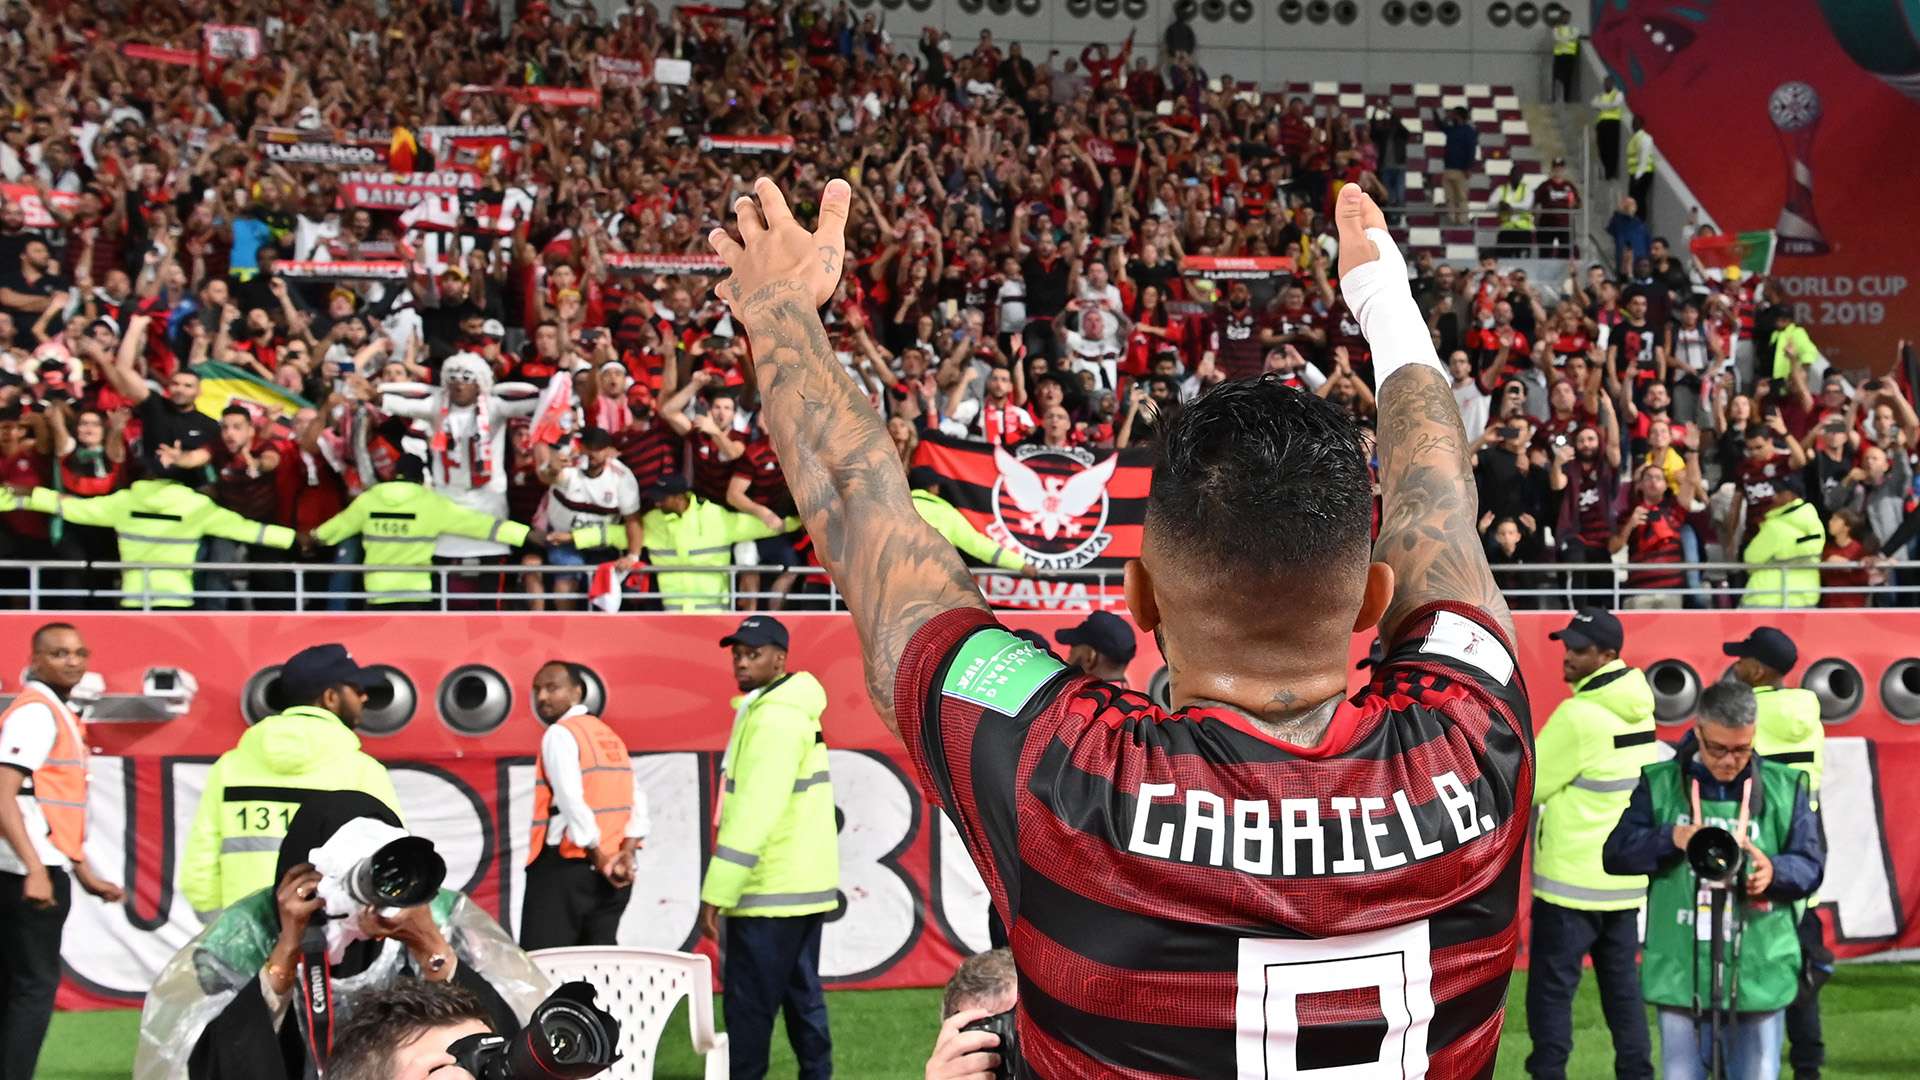 Gabigol torcida Flamengo Al Hilal Mundial de Clubes 17 12 2019